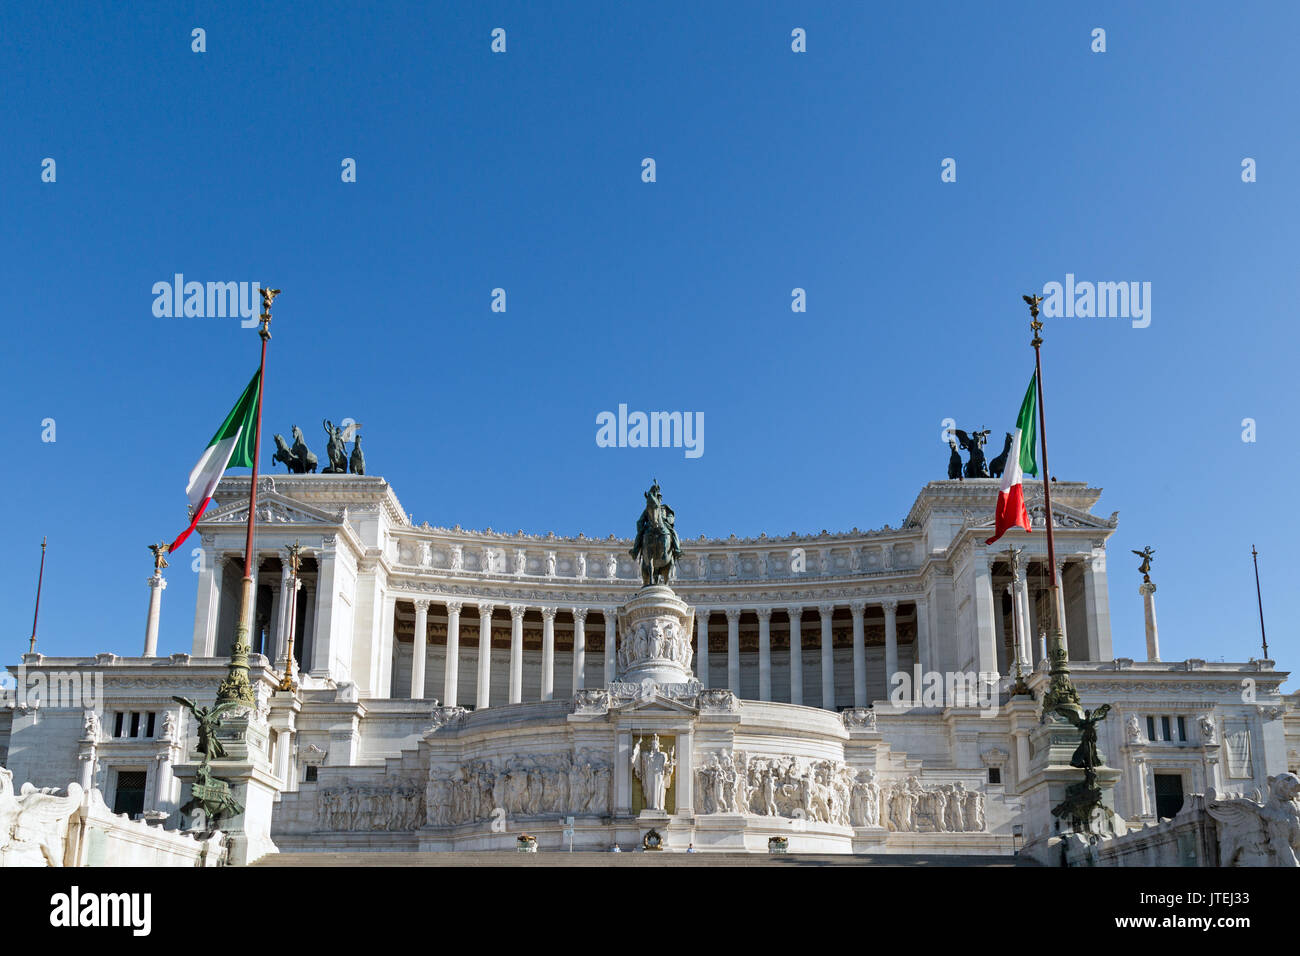 Monument ou monumento nazionale a vittorio emanuele ii à Rome, Italie. Banque D'Images